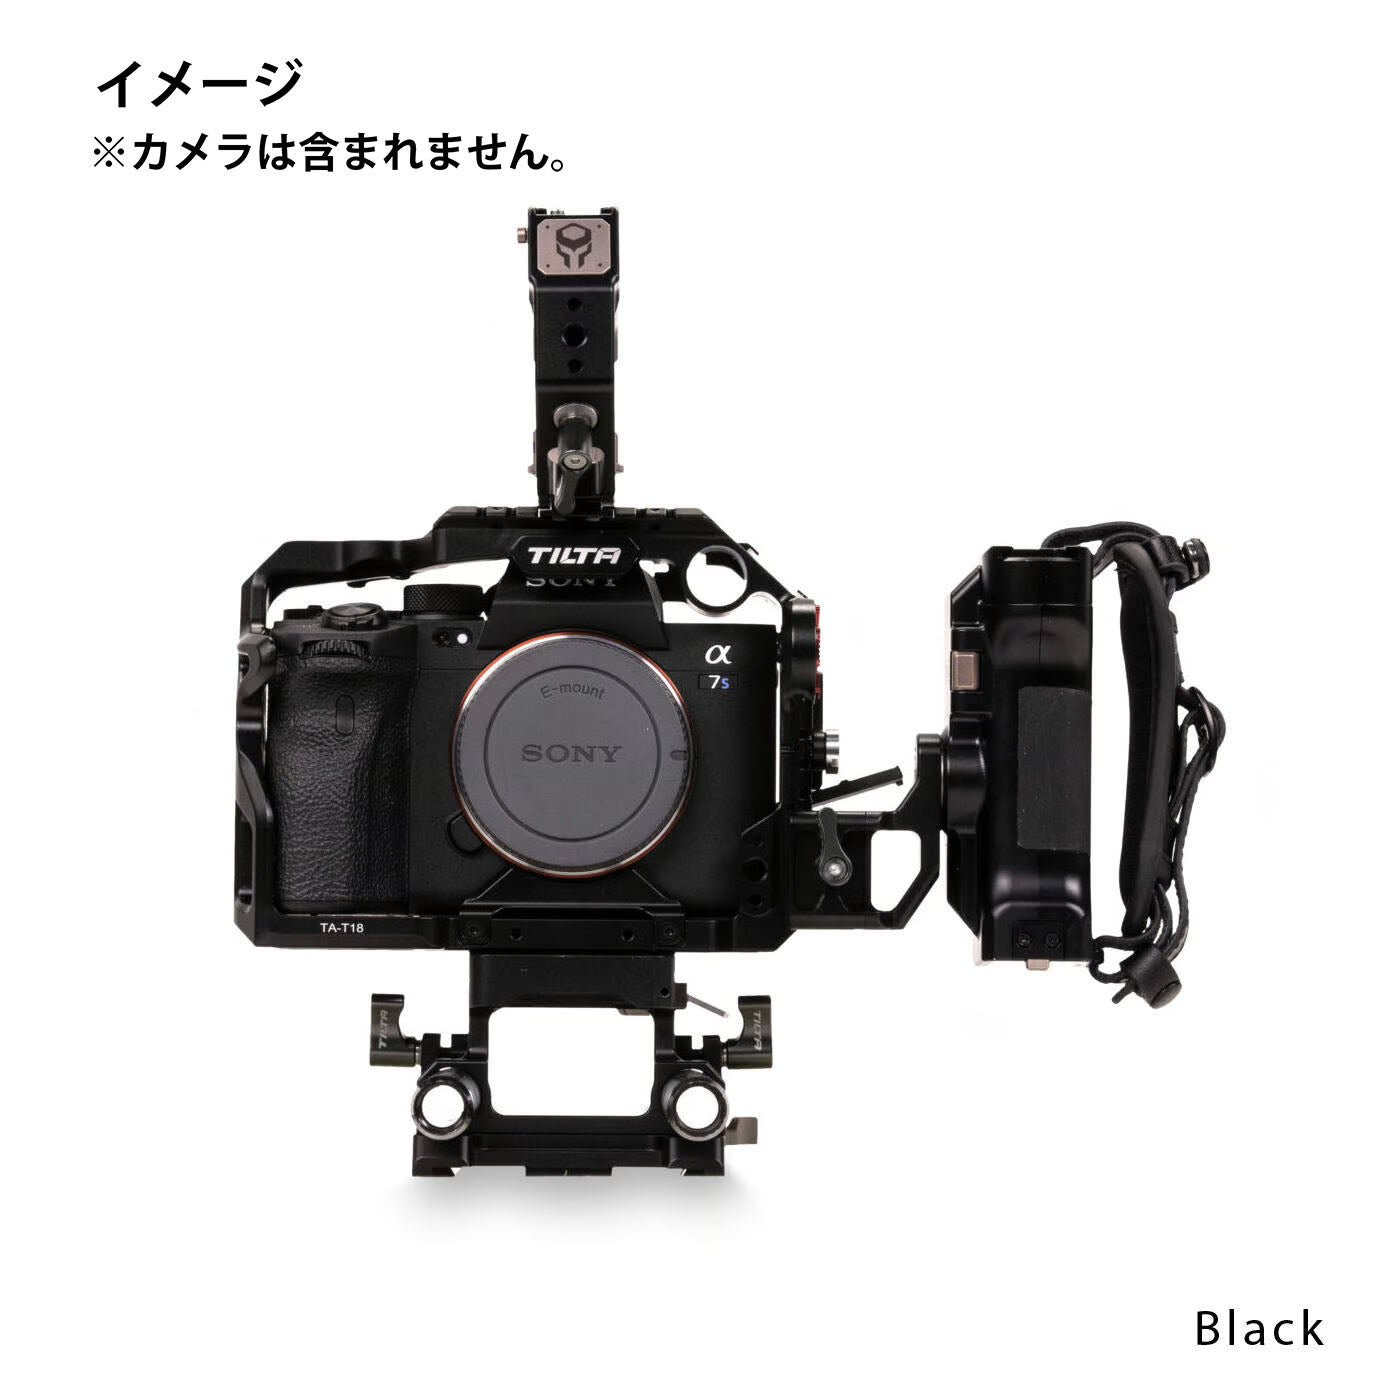 TILTA(ティルタ) Tiltaing Sony a7siii Kit E - Black TA-T18-E-B